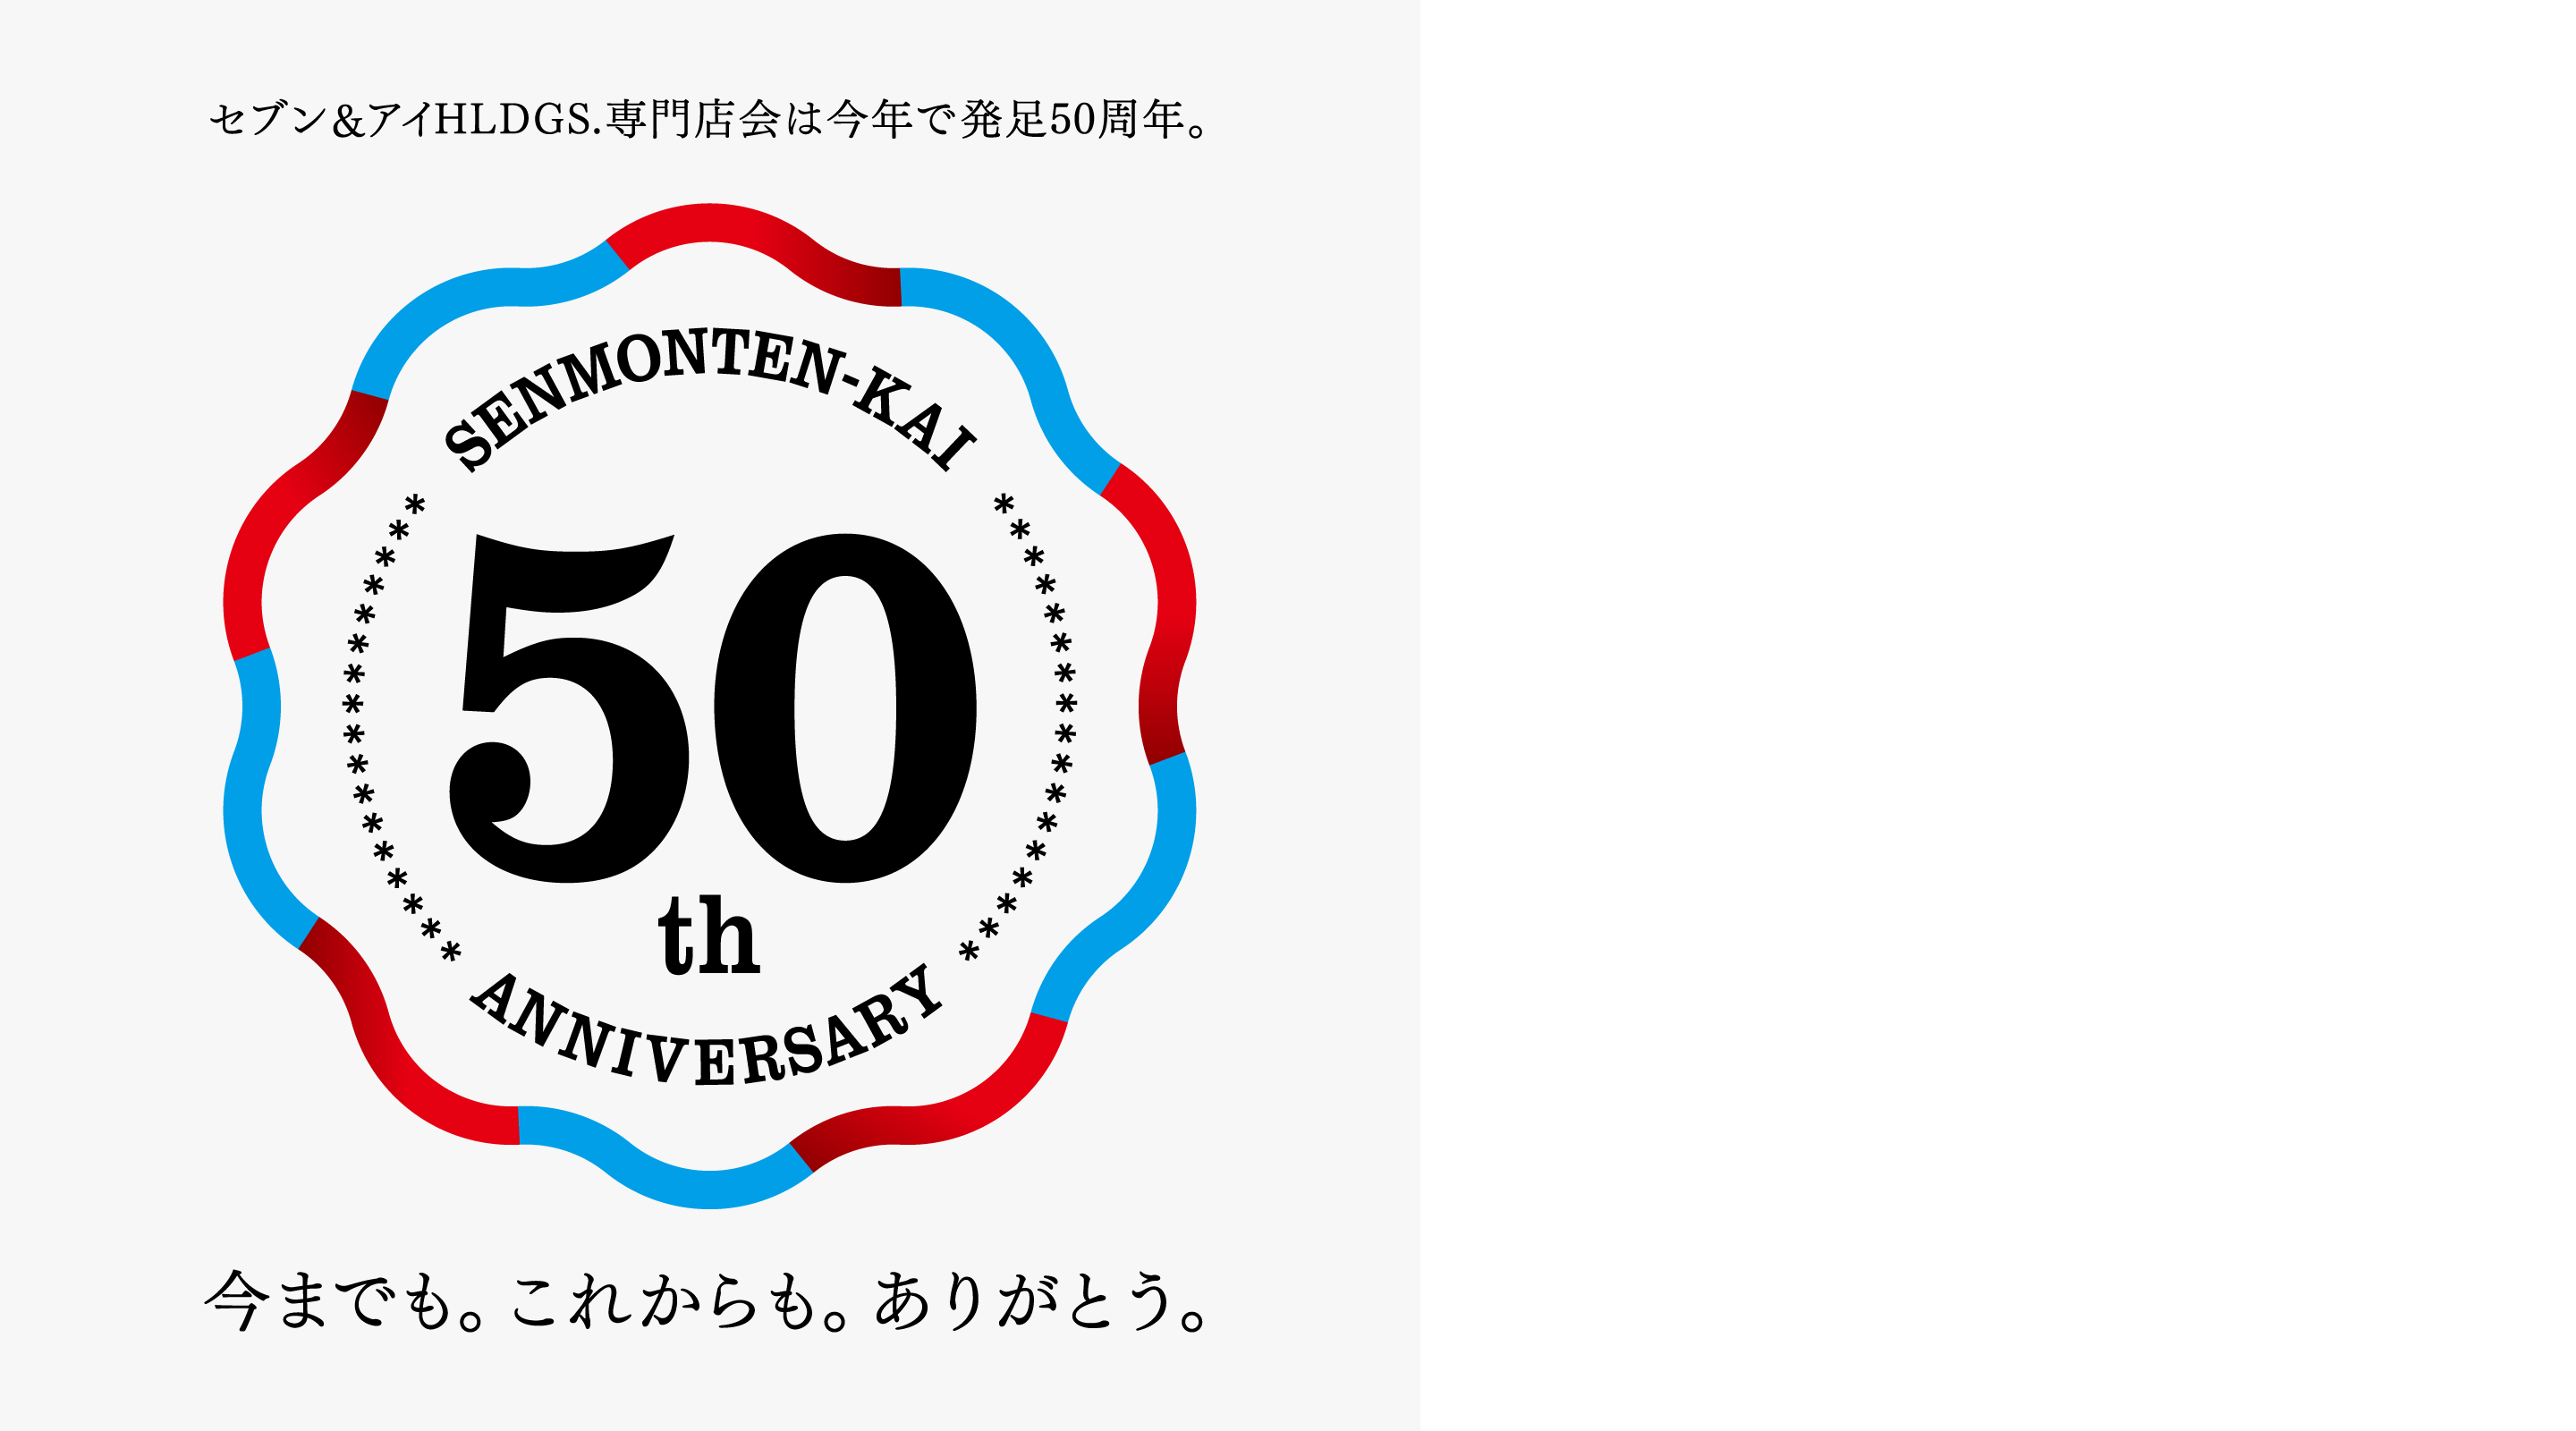 セブン&アイHLDGS.専門店会は今年で発足50周年。SENMONTEN-KAI 50th ANNIVERSARY 今までも。これからも。ありがとう。